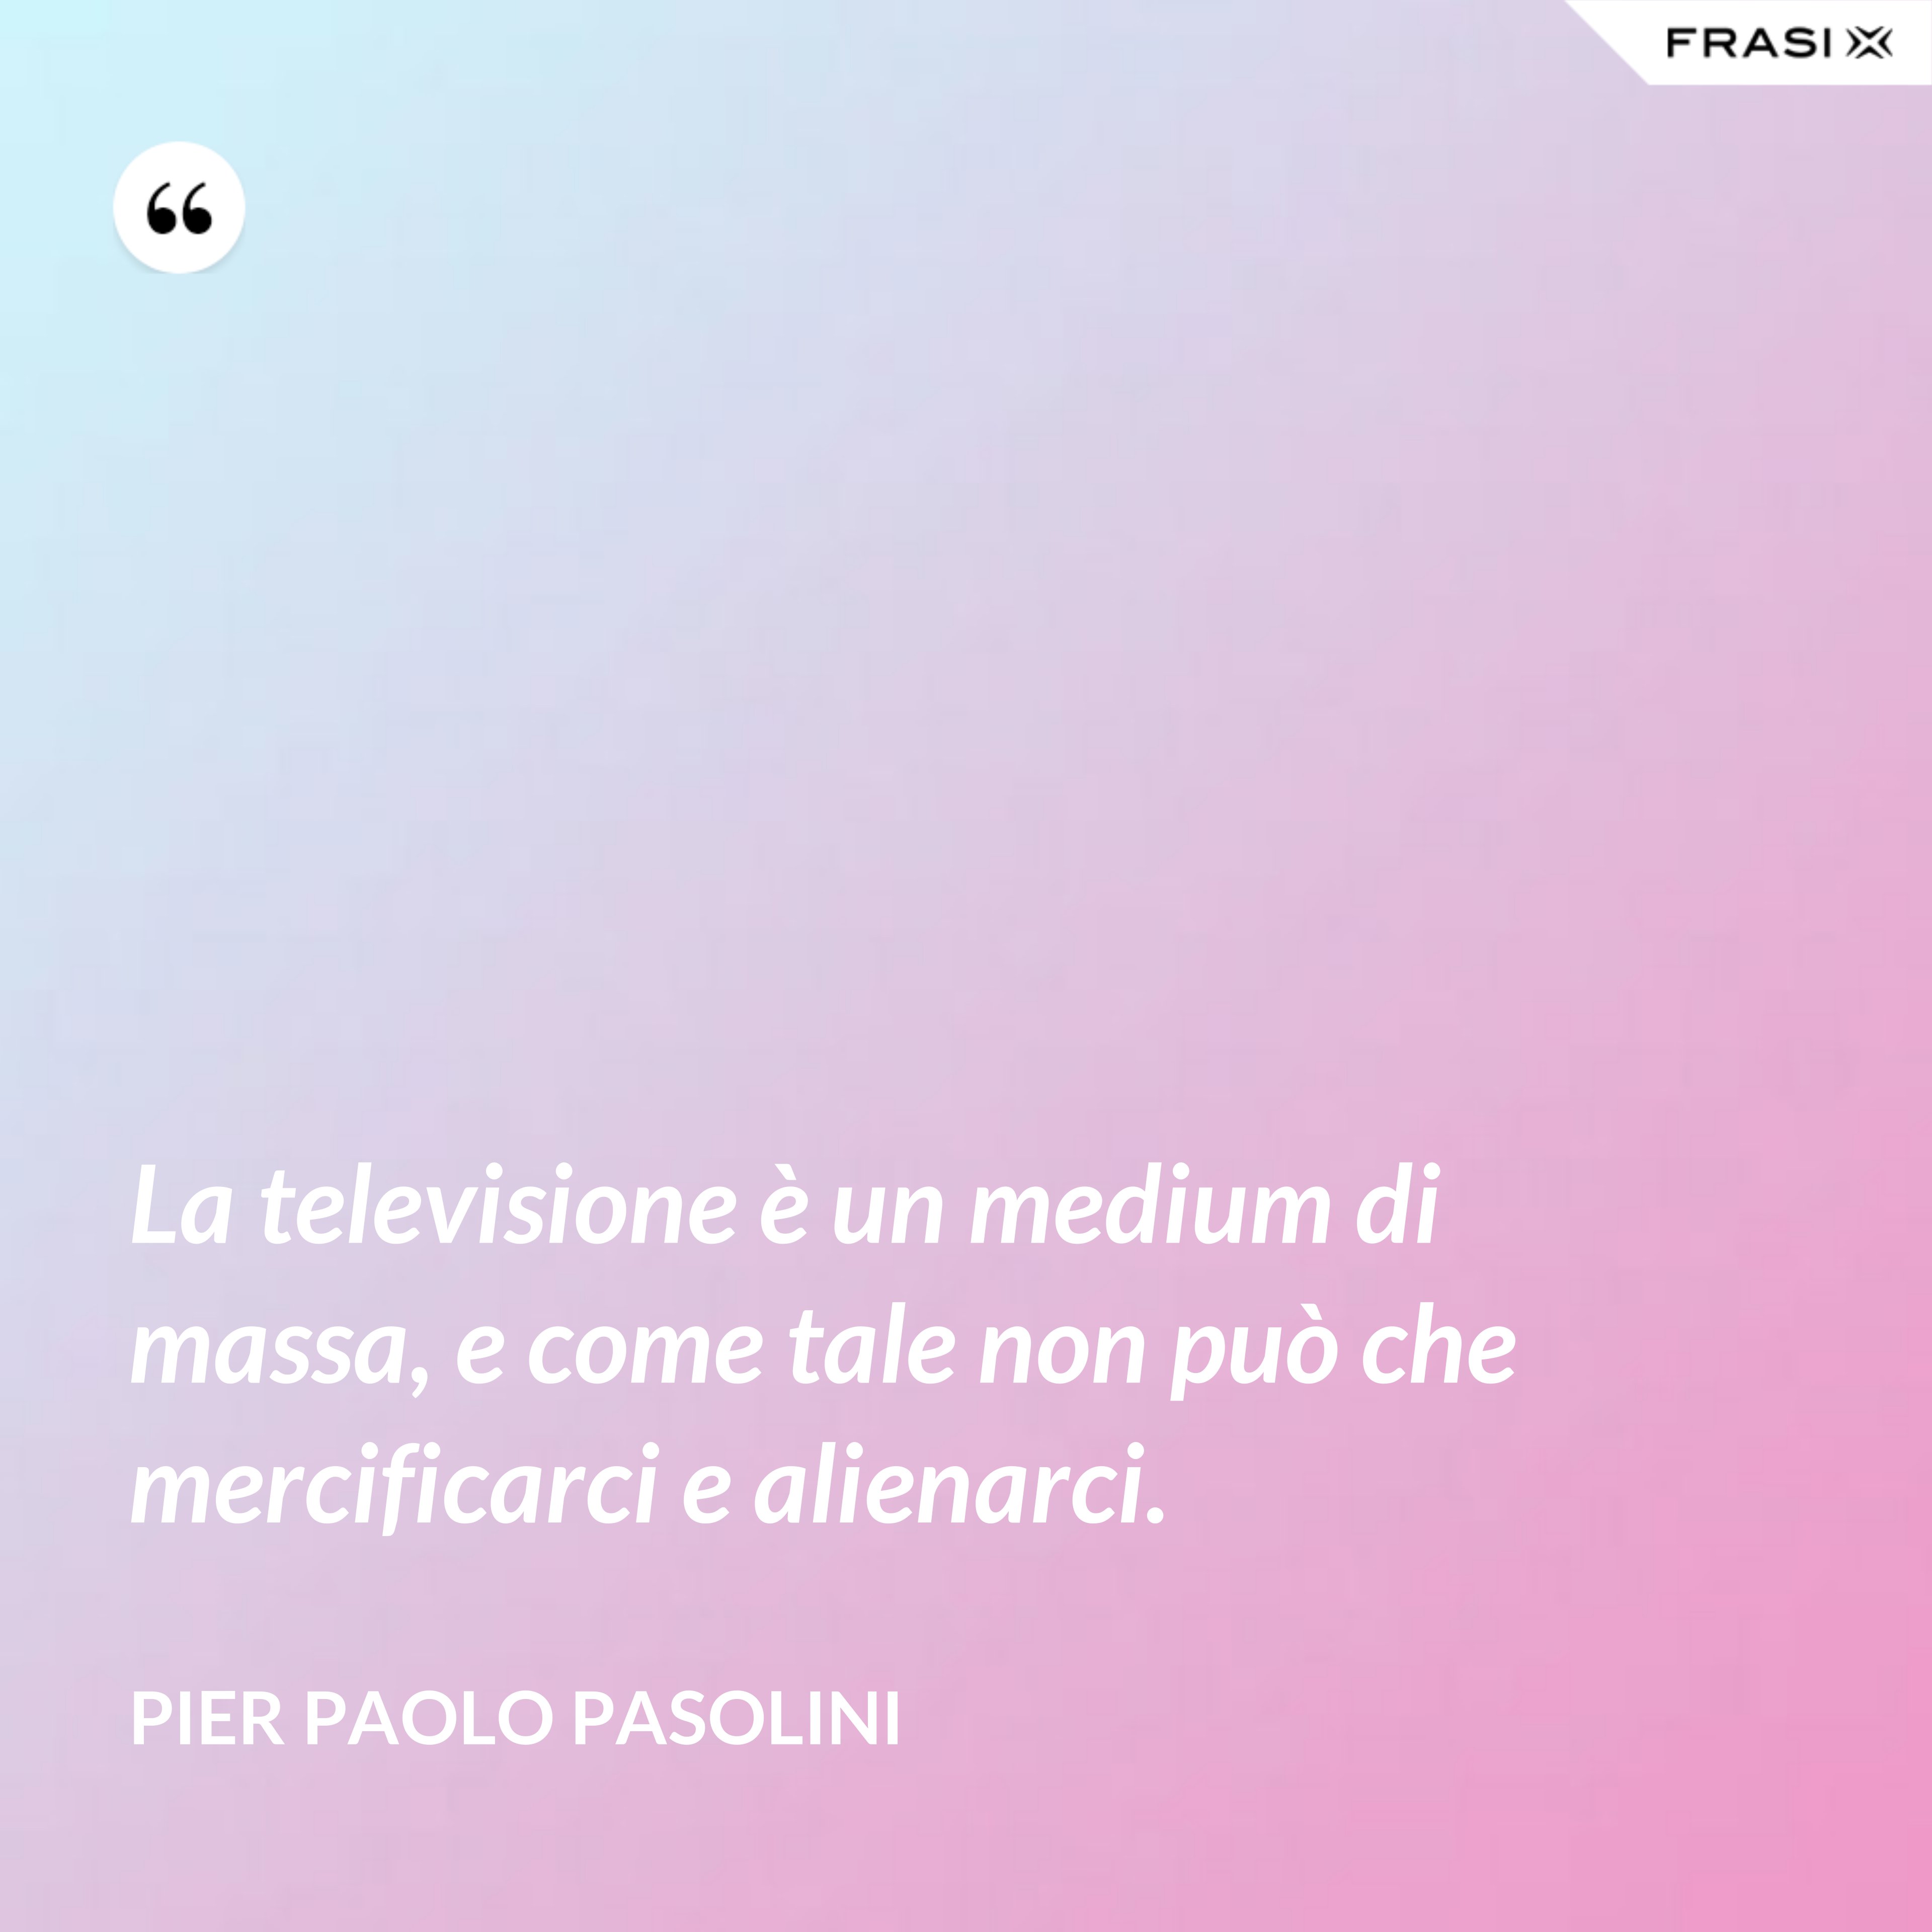 La televisione è un medium di massa, e come tale non può che mercificarci e alienarci. - Pier Paolo Pasolini